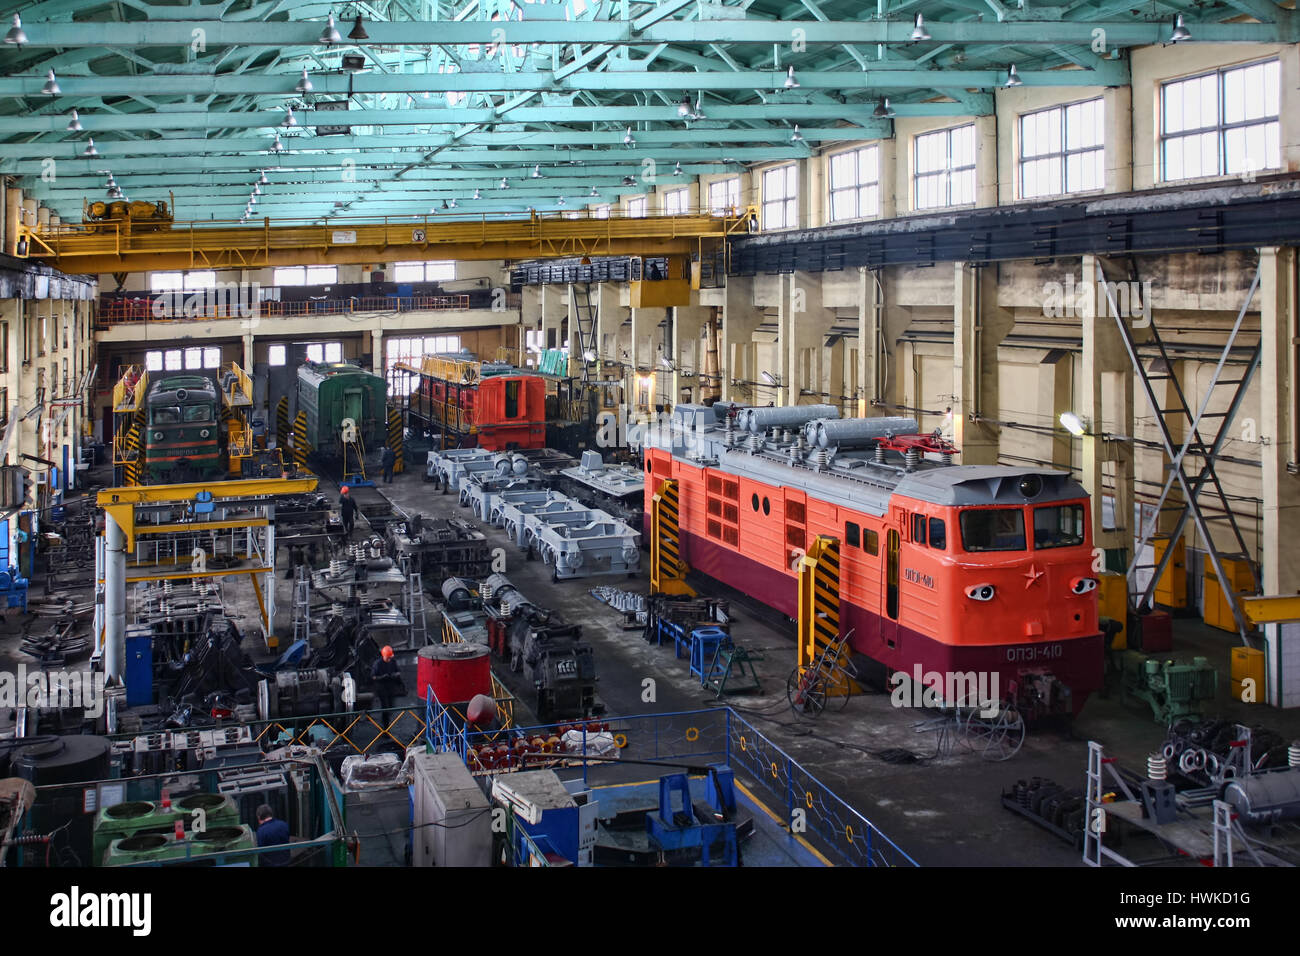 Reparatur von Lokomotiven, die Stadt von Kamenolomni, Russland, 20. April 2011 Stockfoto